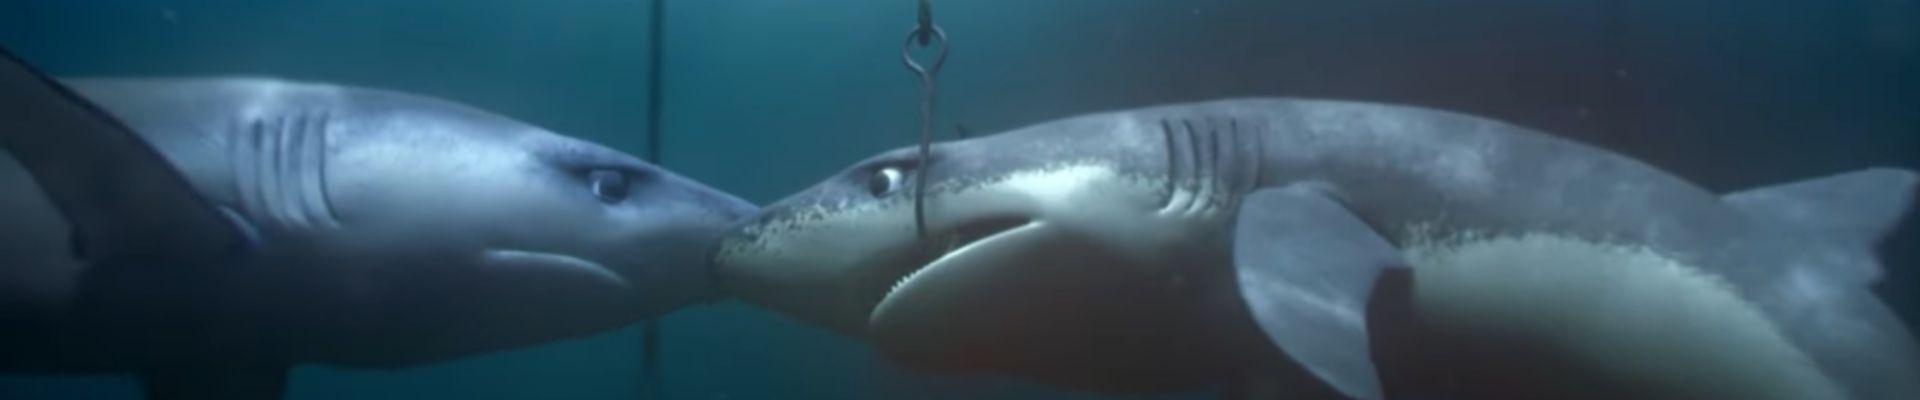 Greenpeace apresenta um curta-metragem sobre as ameaças aos tubarões